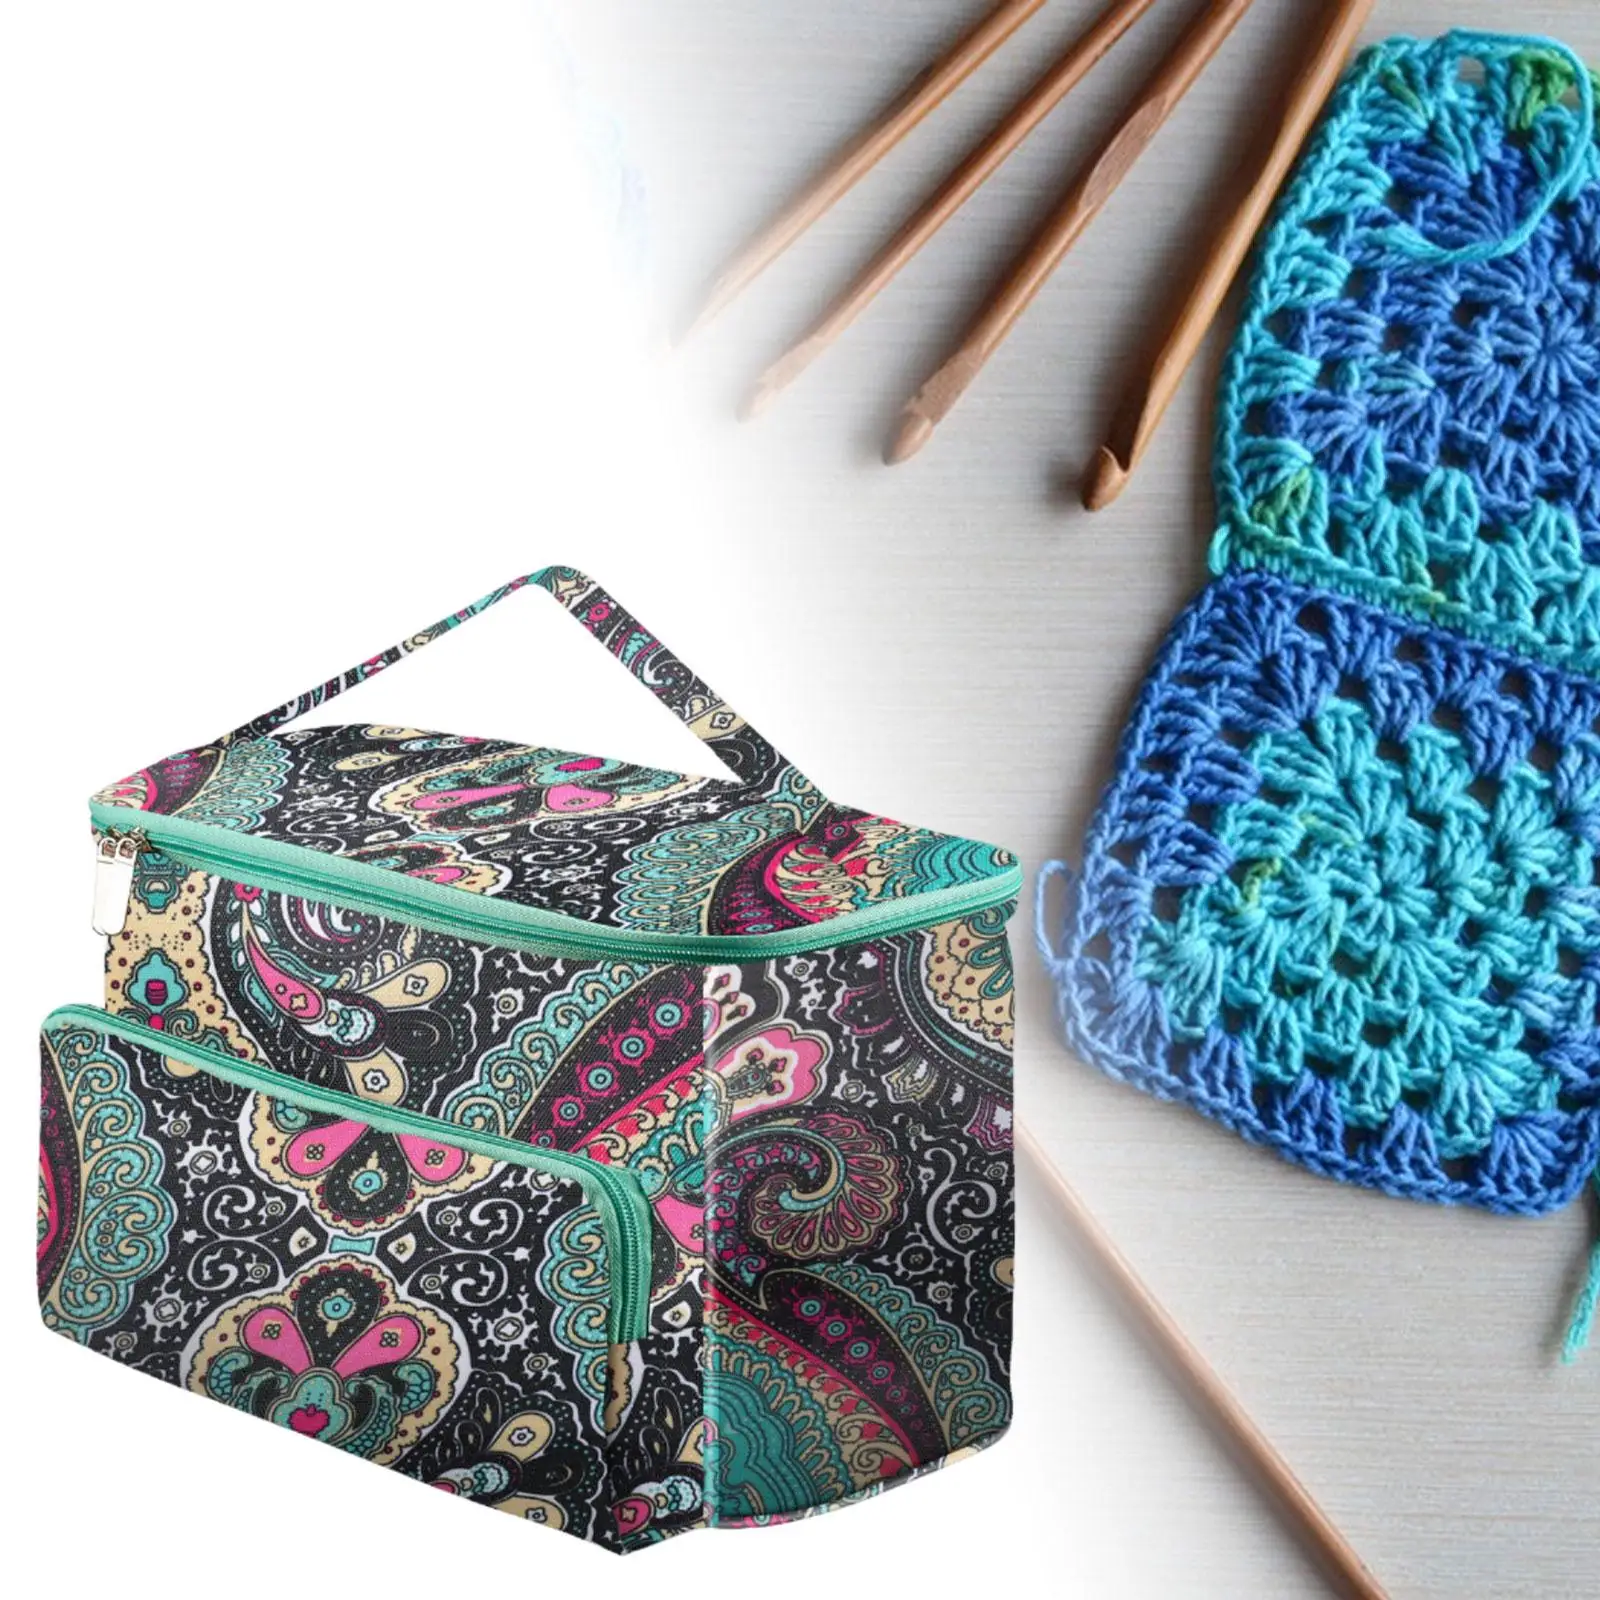 Yarn Storage Tote Bag Knitting Bag 600D Oxford Cloth Yarn Organizer Crochet Bag Tote